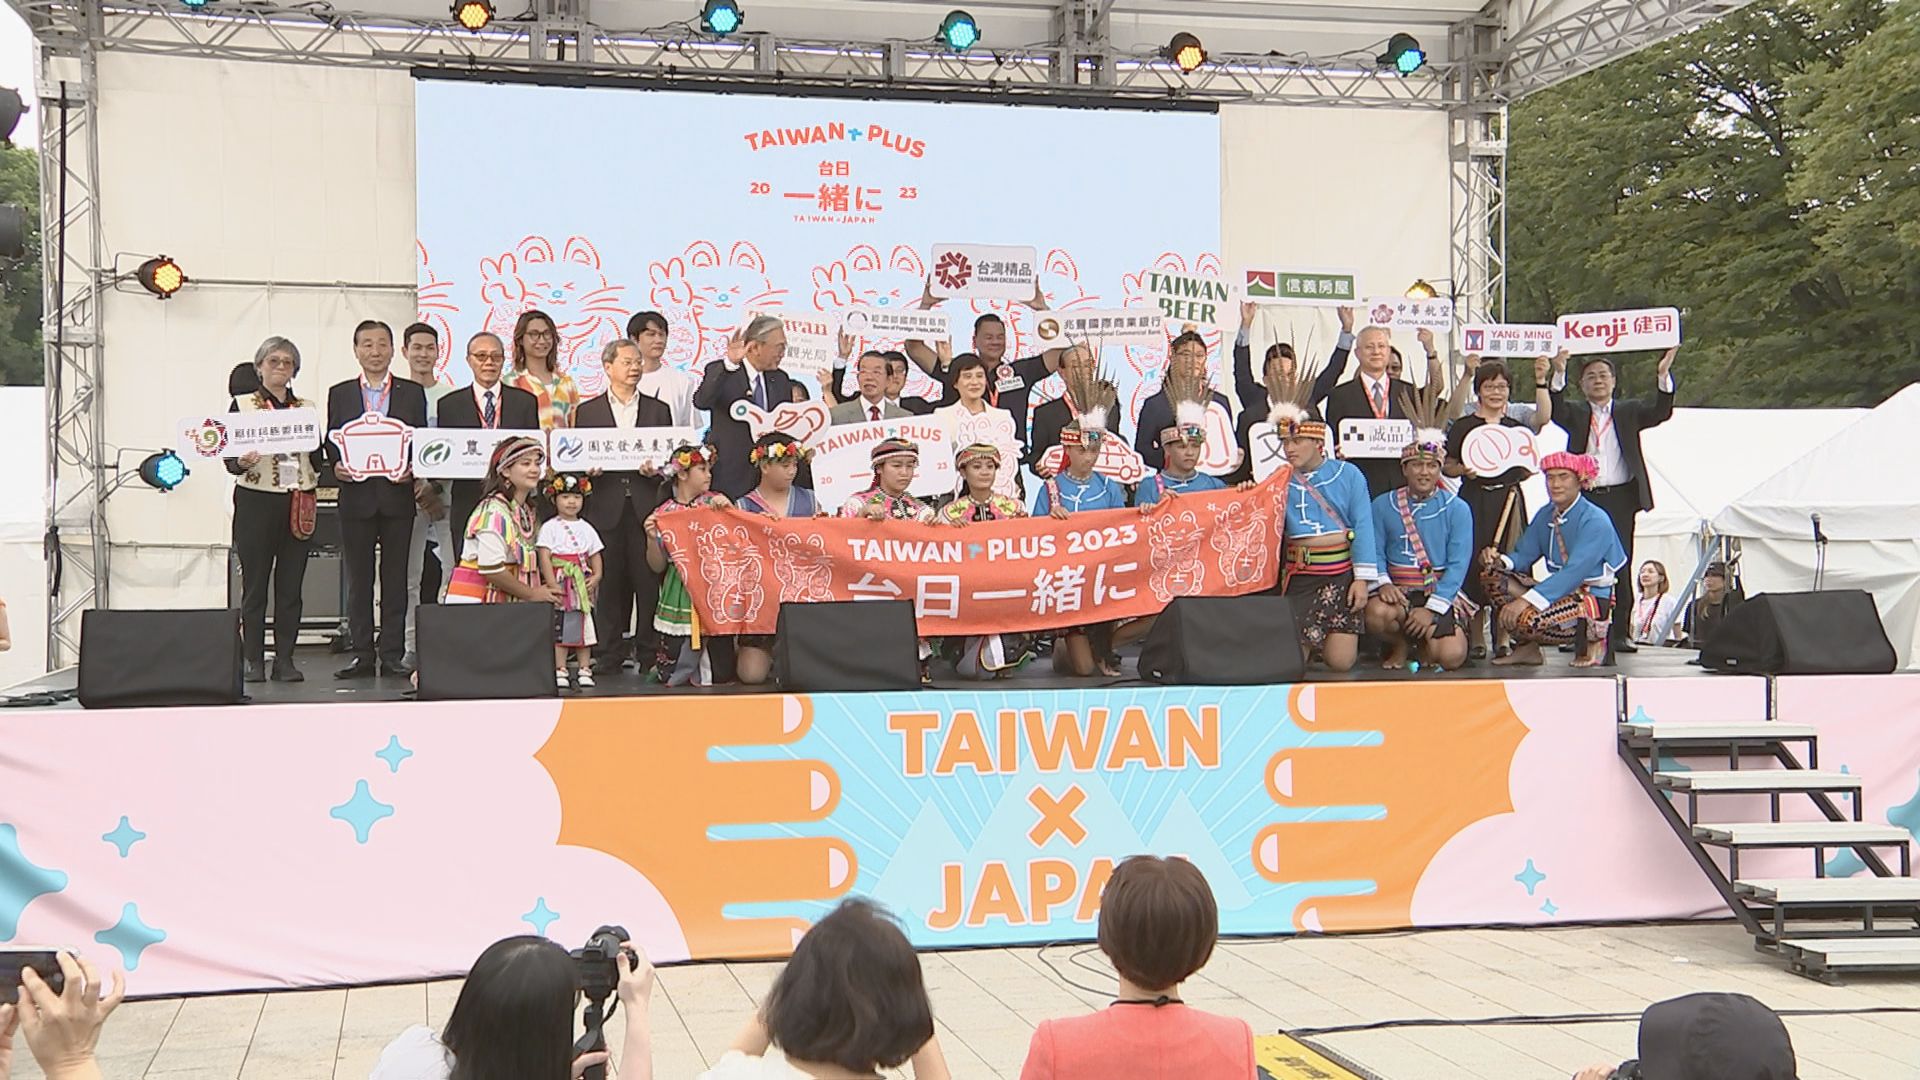 台湾文化の発信イベント「TAIWAN PLUS 2023」始まる